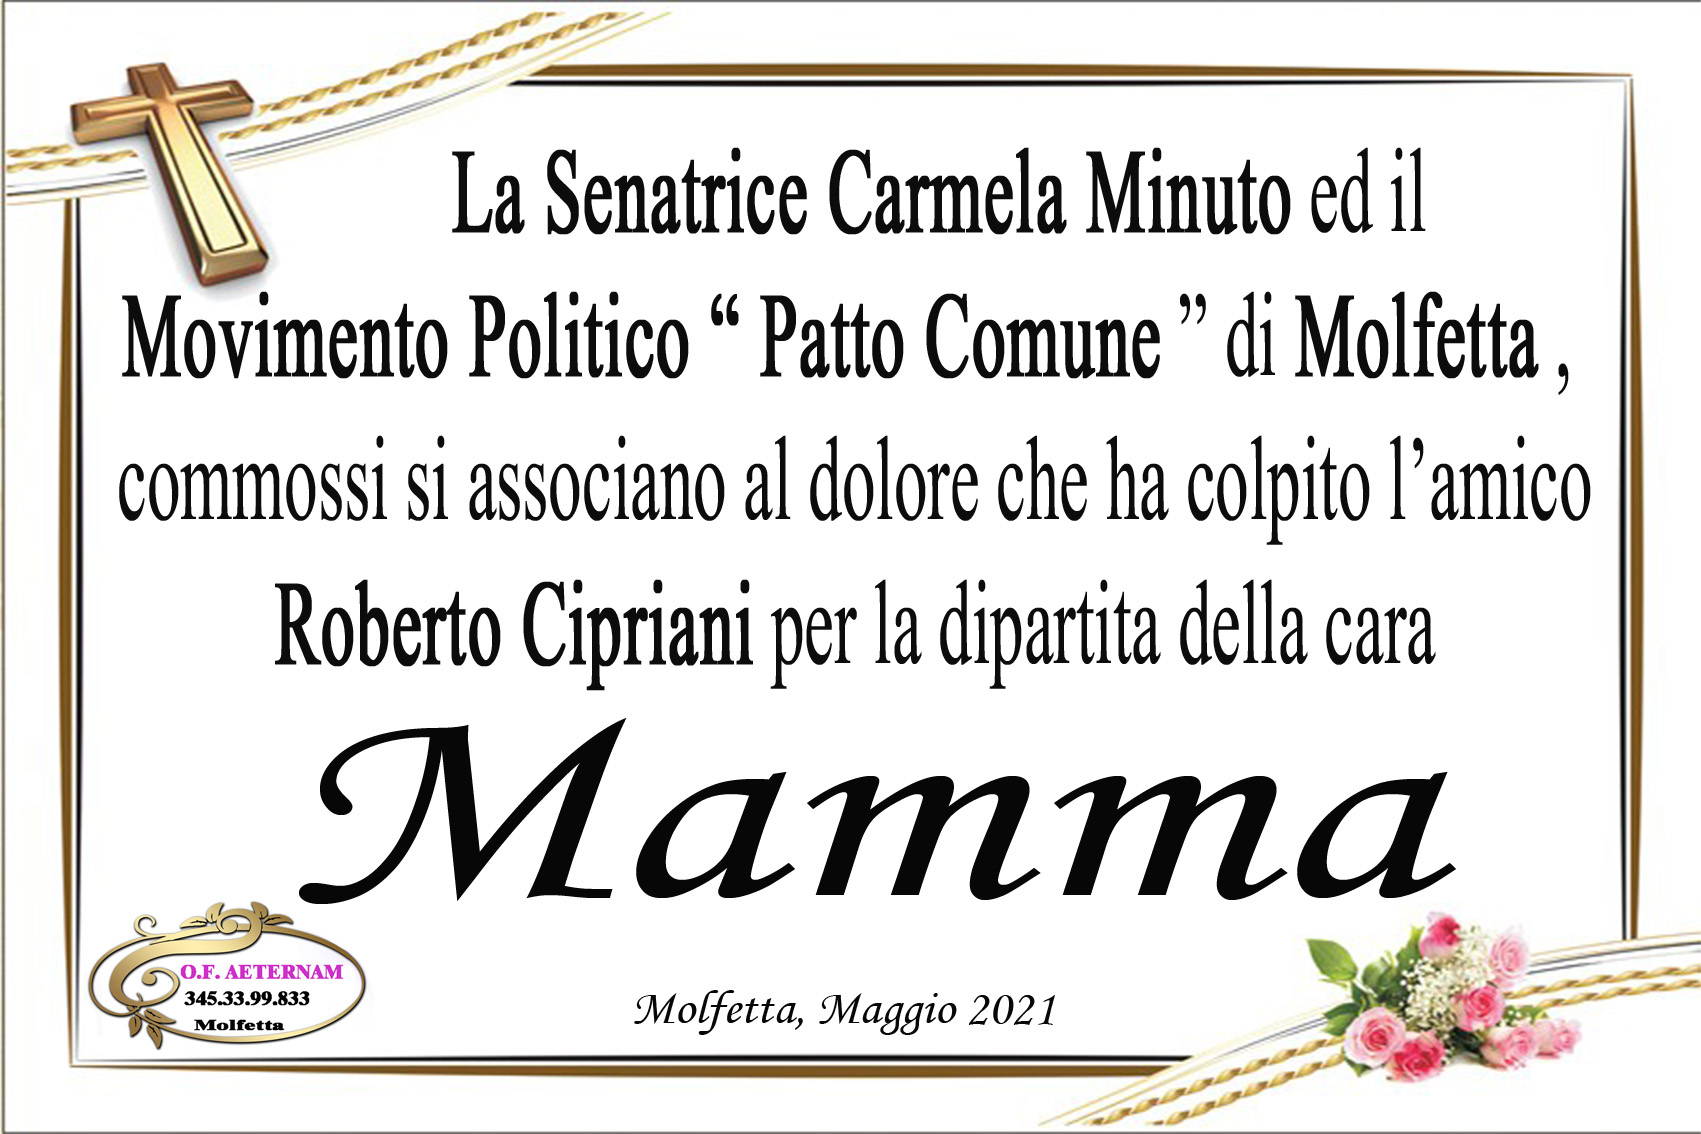 Senatrice Carmela Minuto ed il Movimento Politico "Patto Comune" - Molfetta